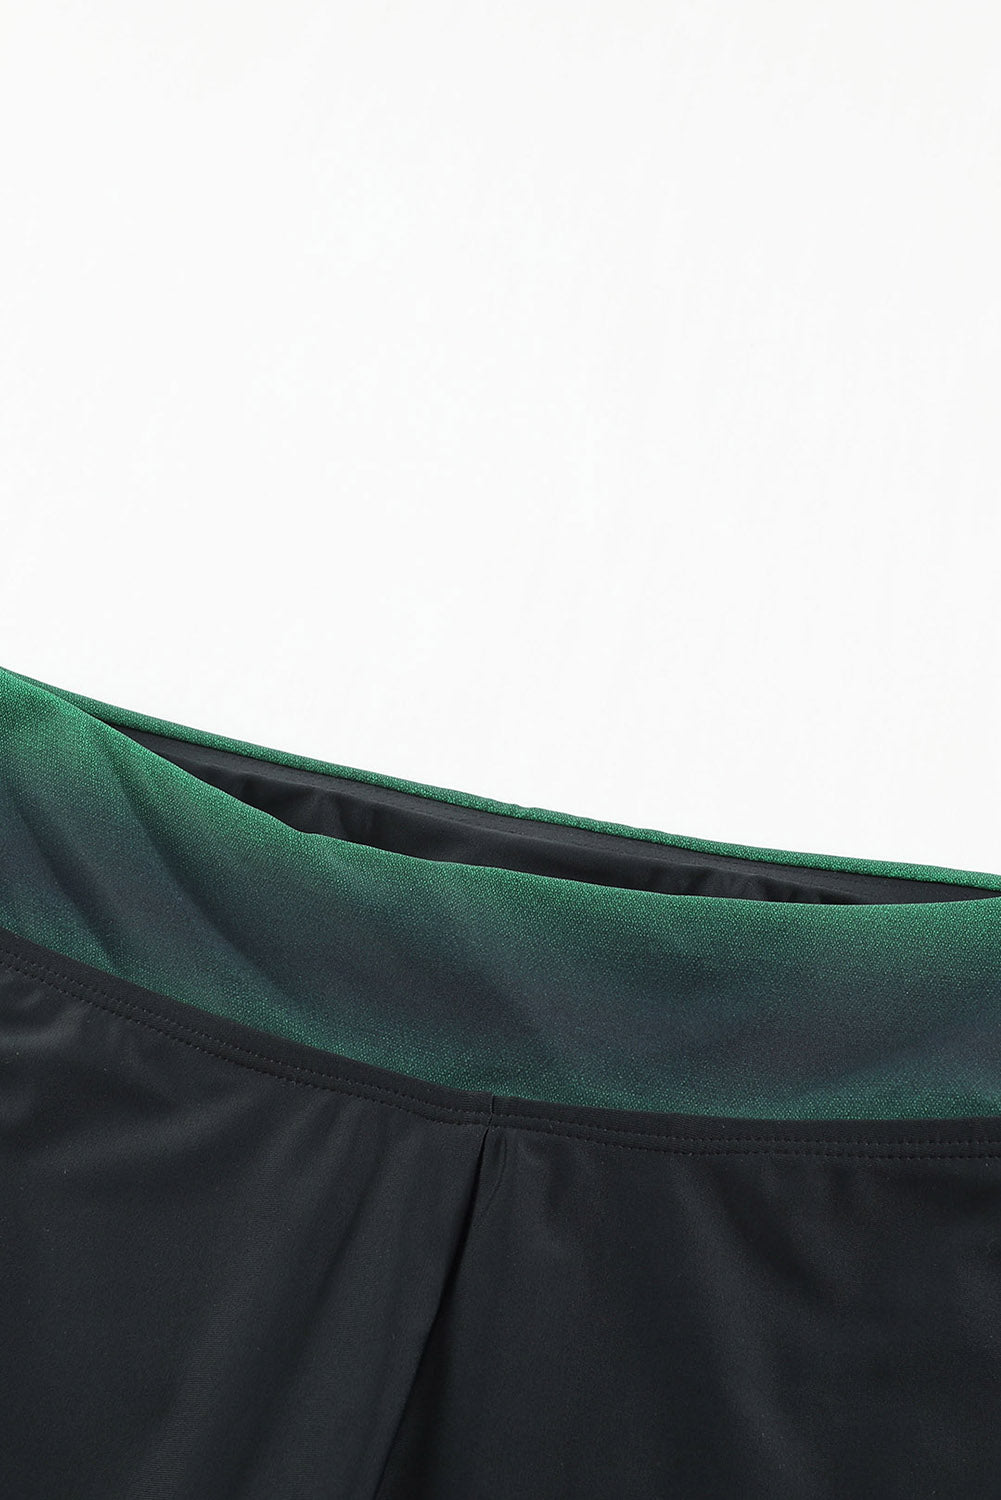 Green Black Ombre Print Racerback Tankini Swimsuit